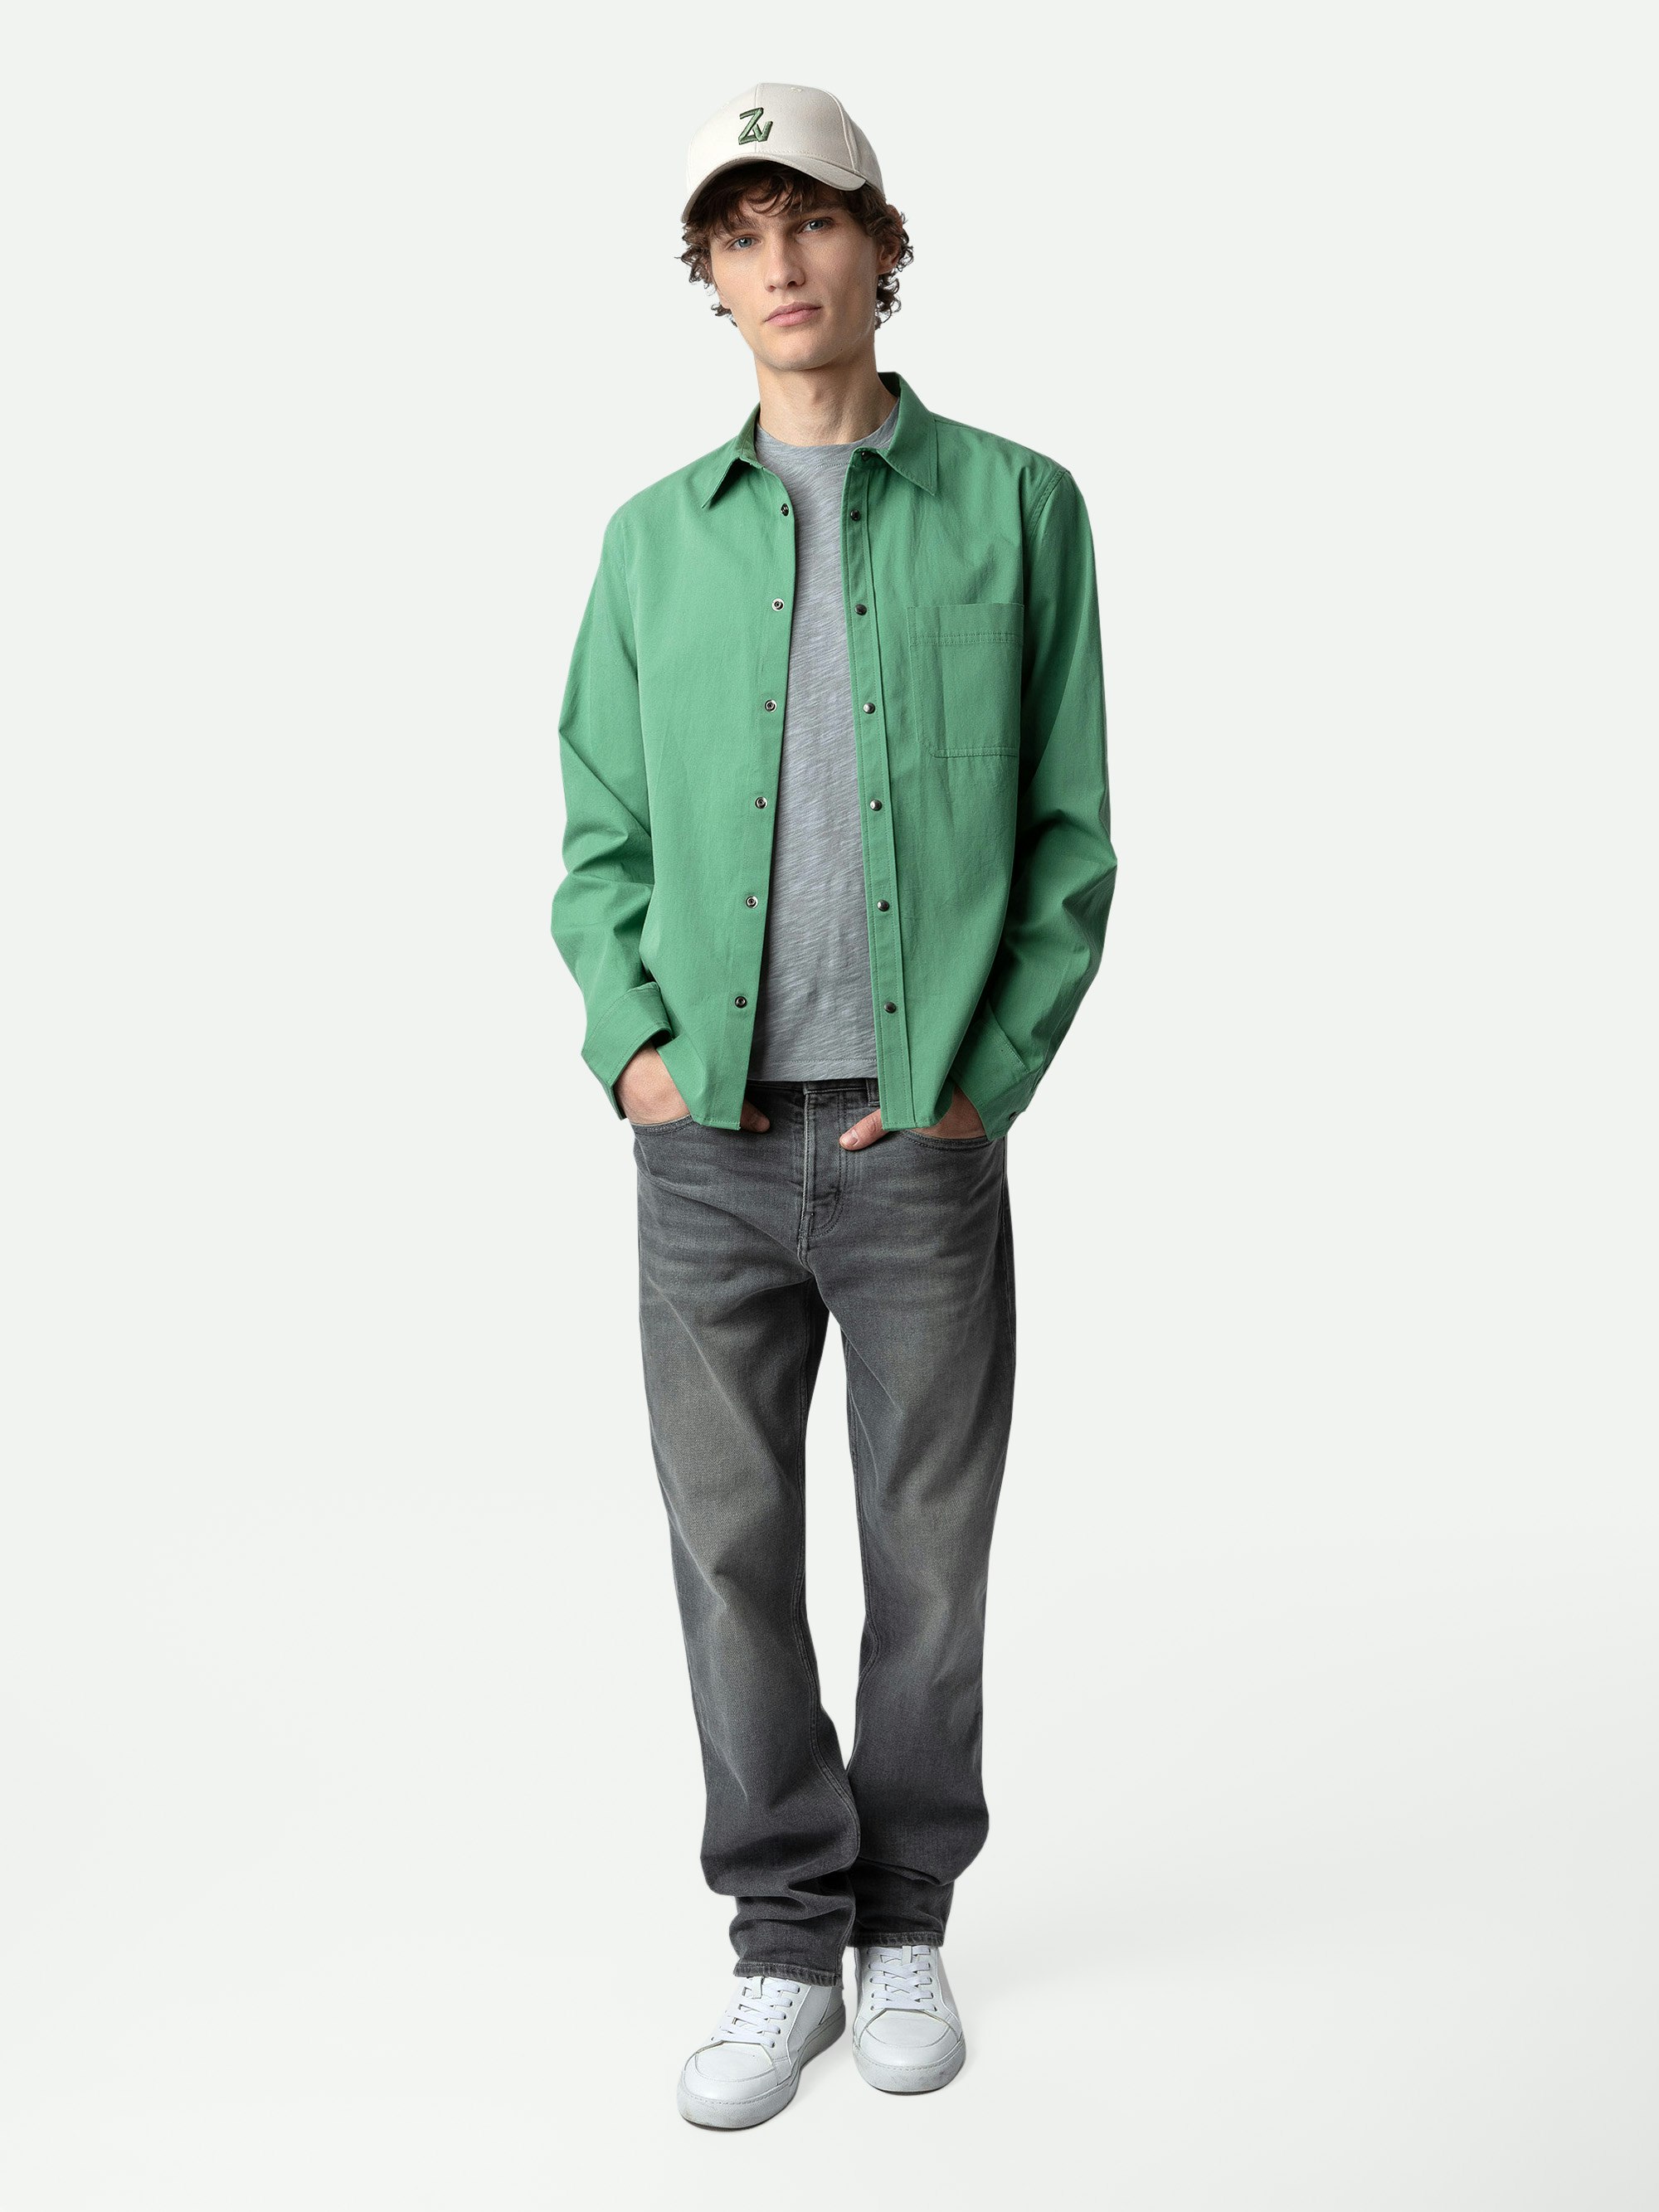 Camicia Stan - Camicia in twill di cotone verde, tasca applicata e personalizzazioni sul retro create da Humberto Cruz.